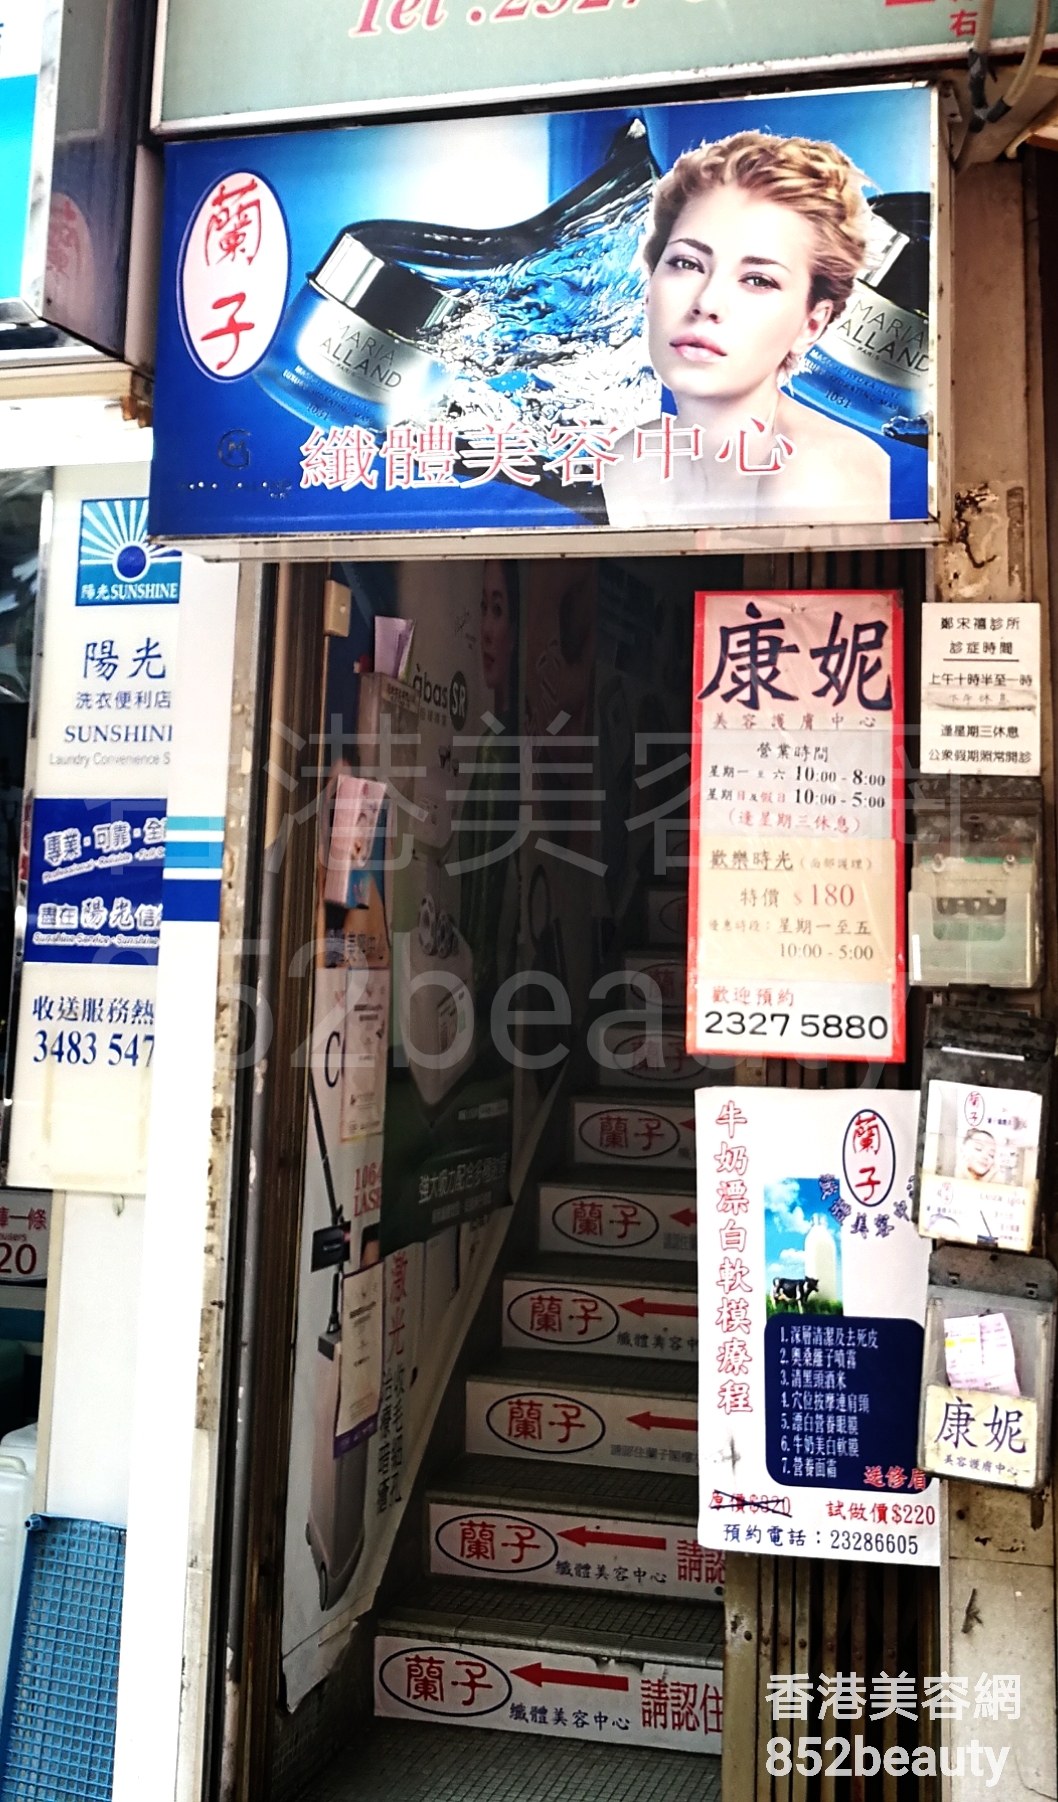 香港美容網 Hong Kong Beauty Salon 美容院 / 美容師: 蘭子 纖體美容中心